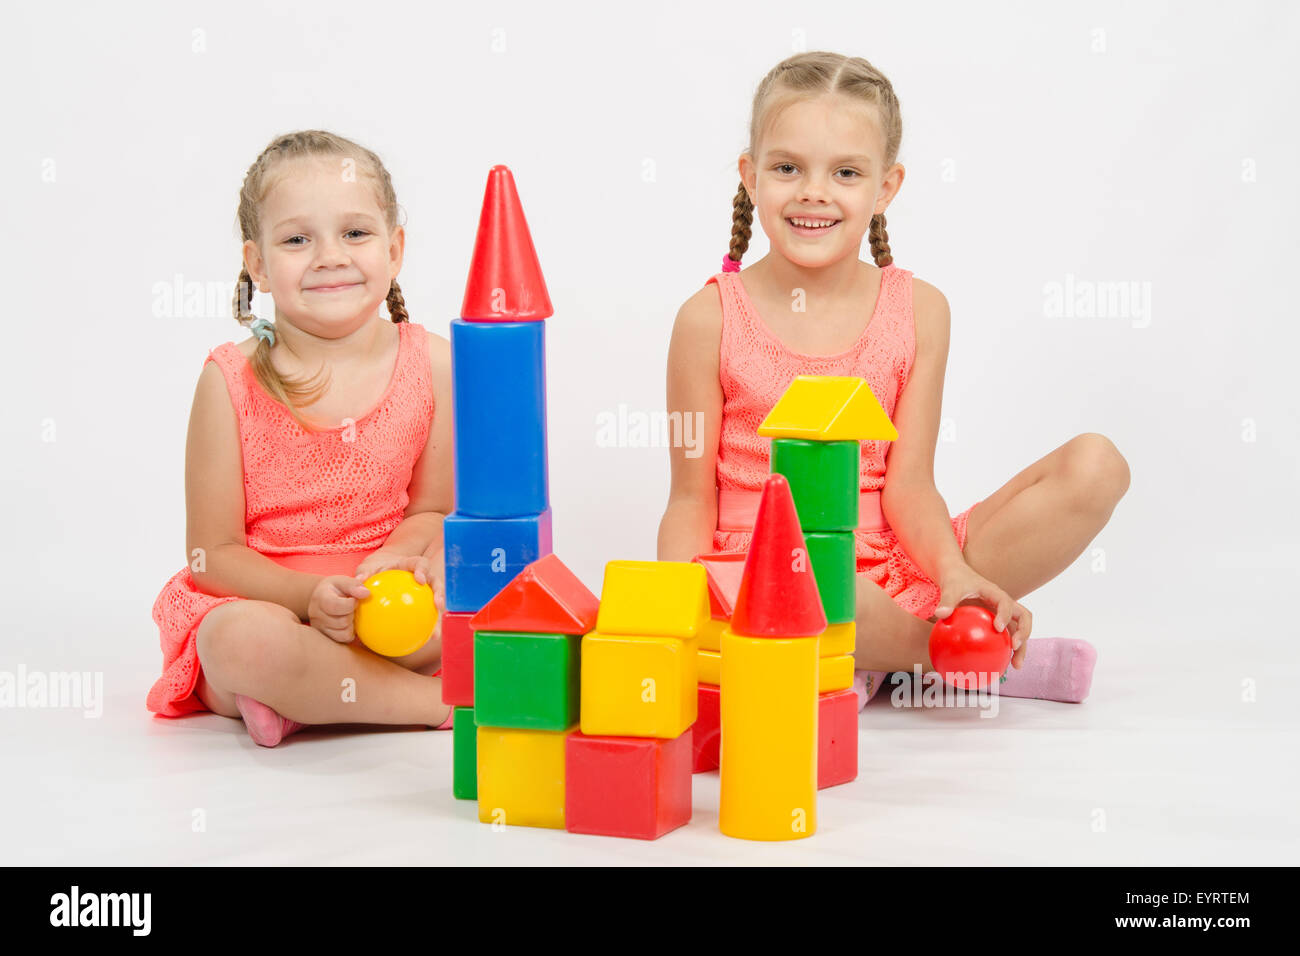 Die vier Jahre und sechs - jähriges Mädchen spielen in einem europäisch anmutenden Würfel, isoliert auf einem hellen Hintergrund Stockfoto